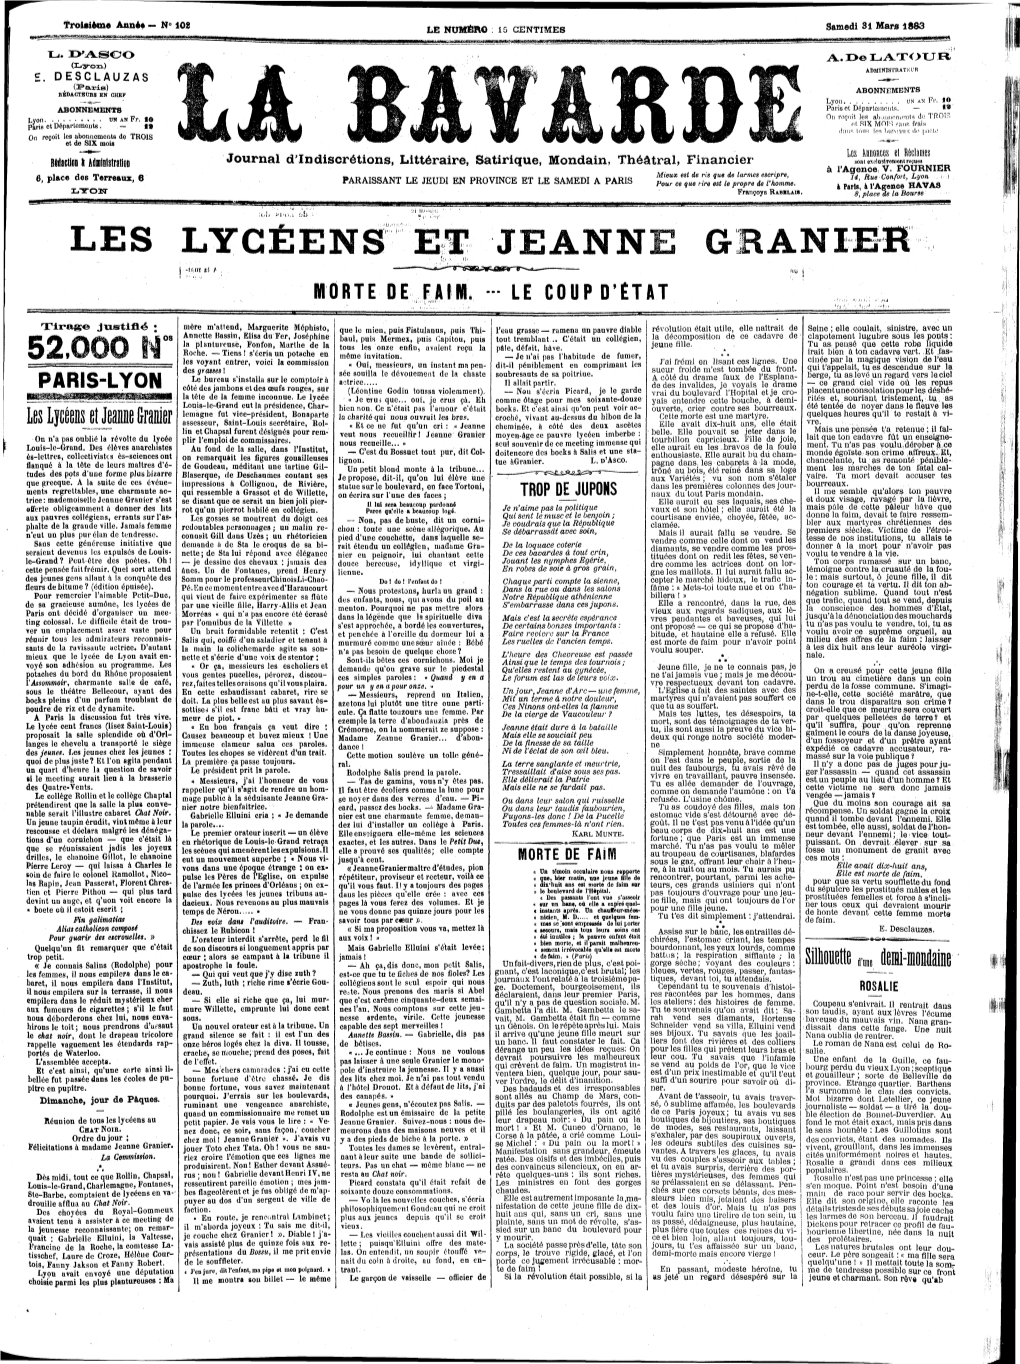 Les Lycéens Et Jeanne Granier